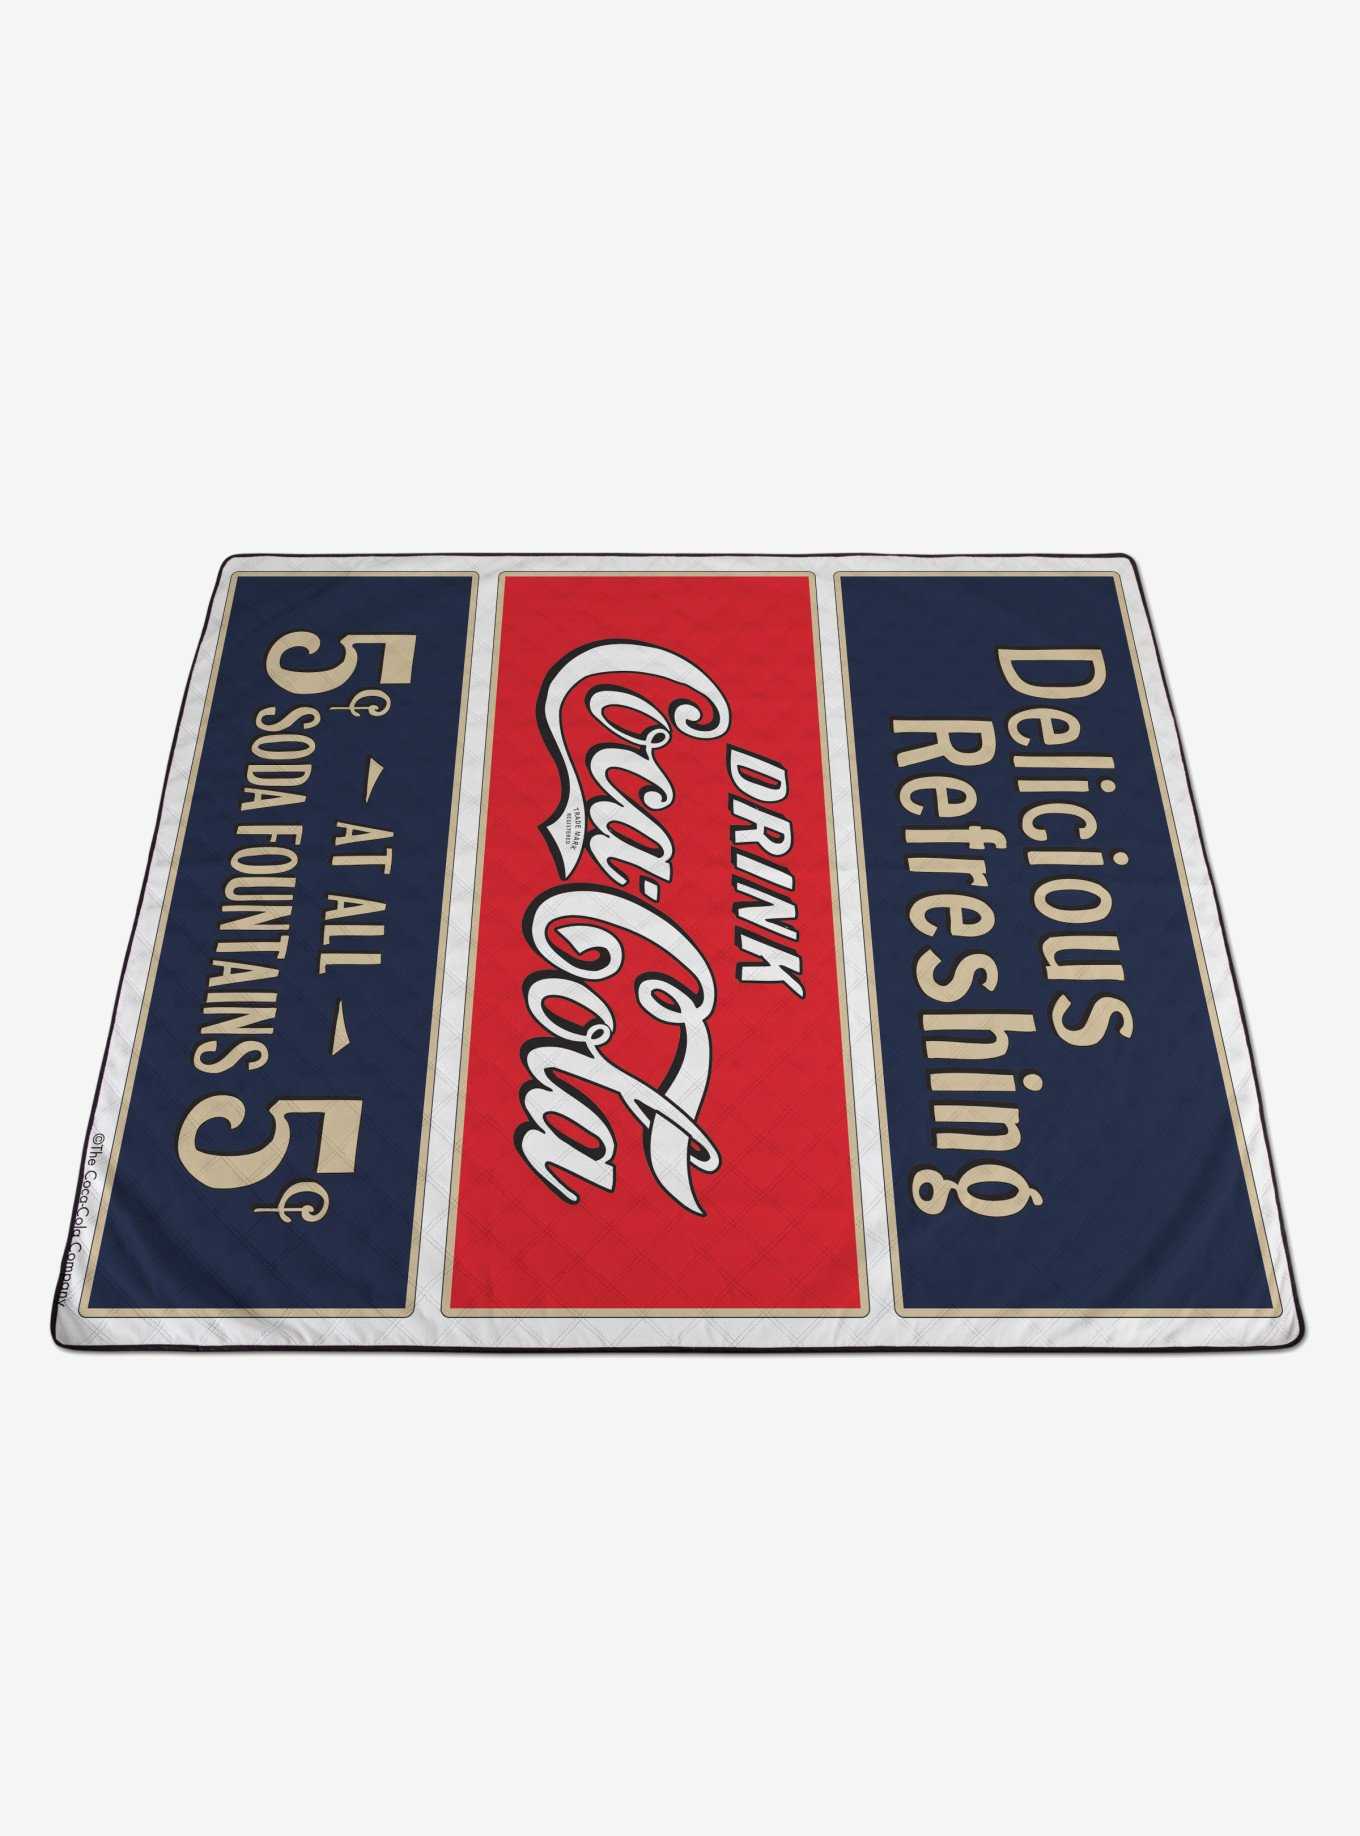 Coca-Cola Delicious Refreshing Impresa Picnic Blanket, , hi-res